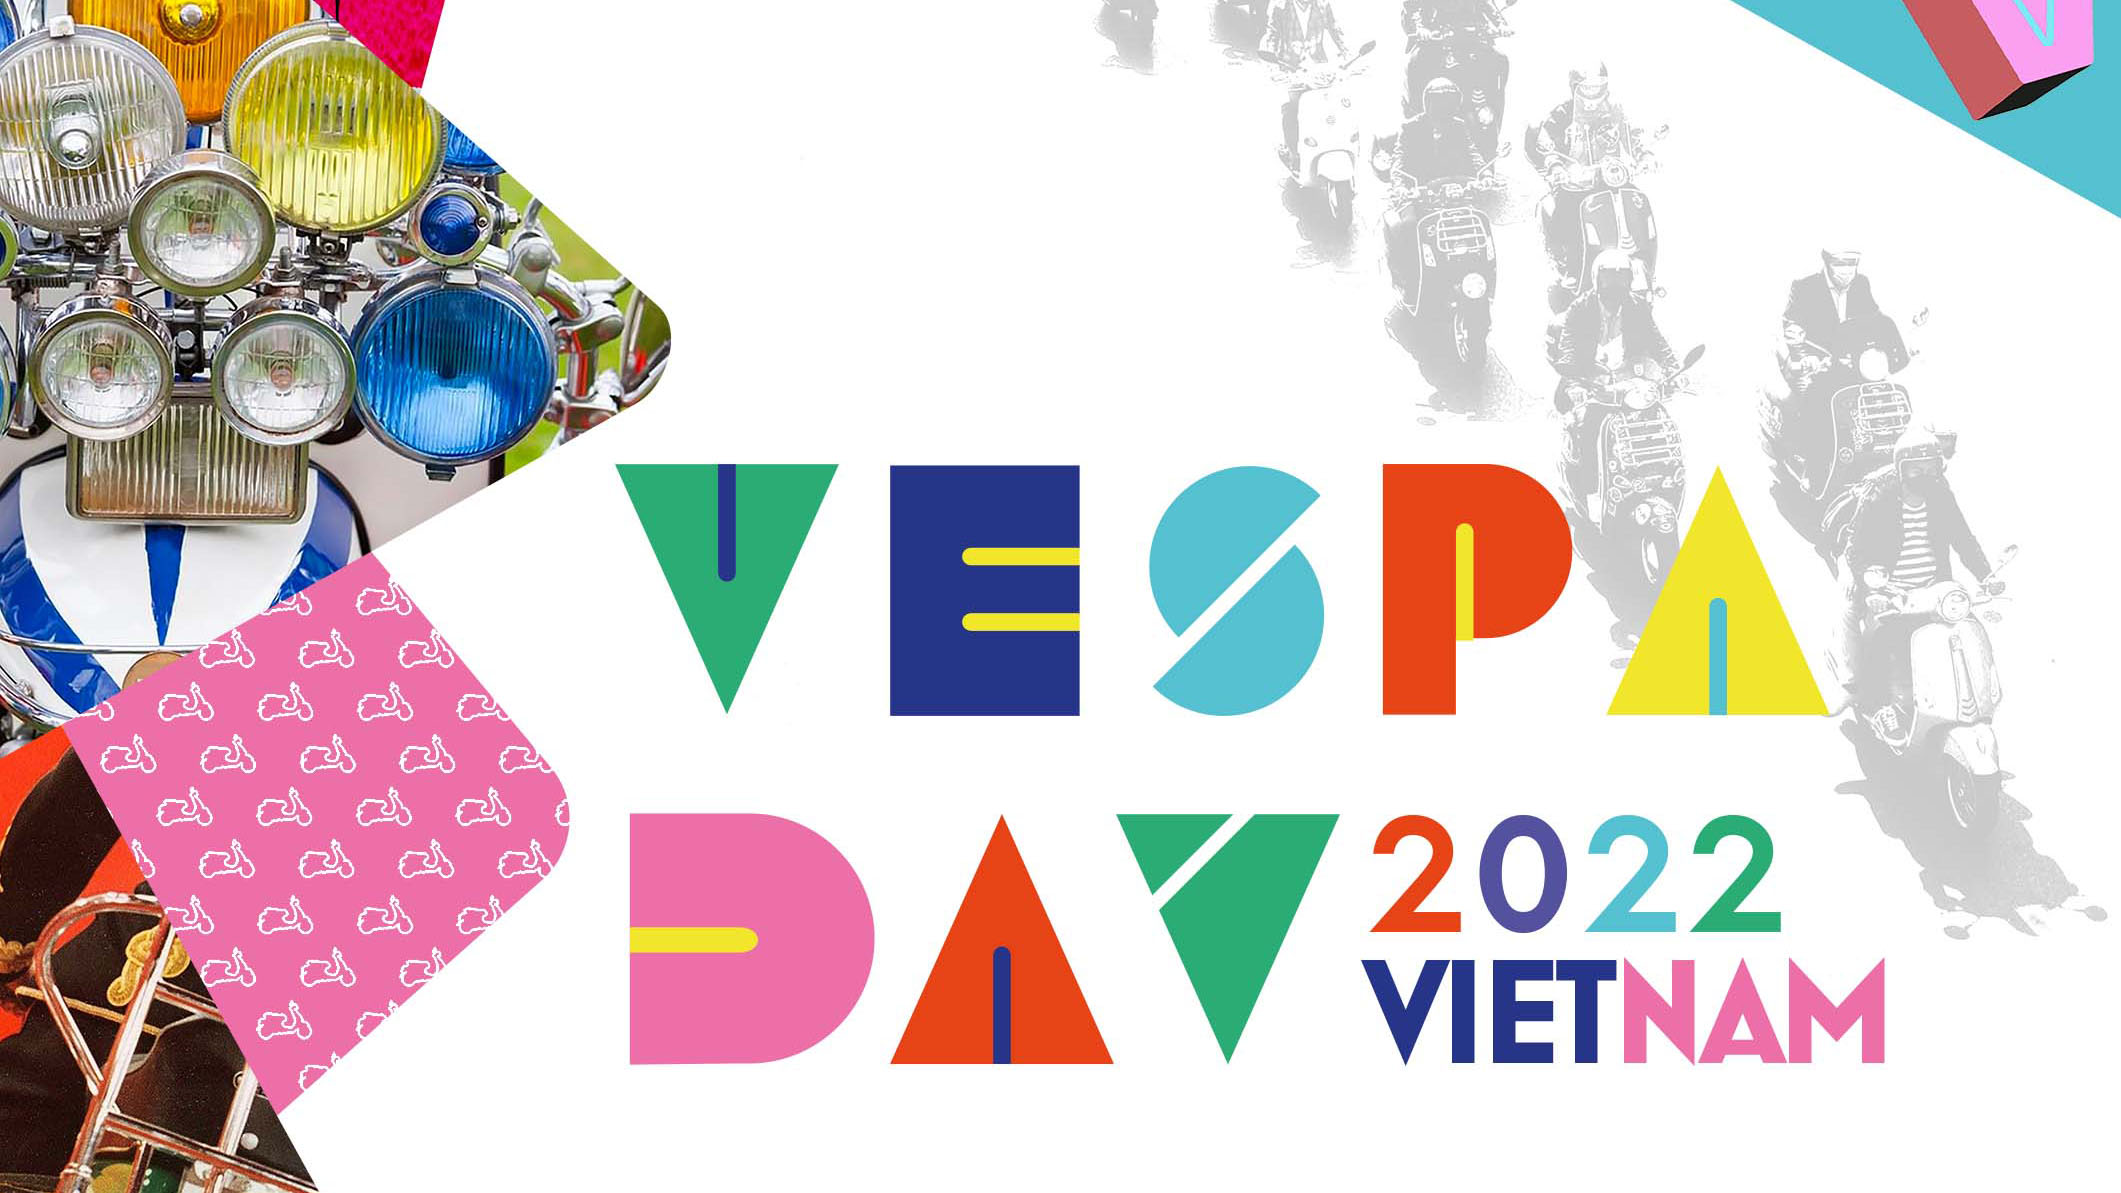 Ngày hội Vespa 2022 sẽ diễn ra vào ngày 24/4 tại Hà Nội và TP.HCM